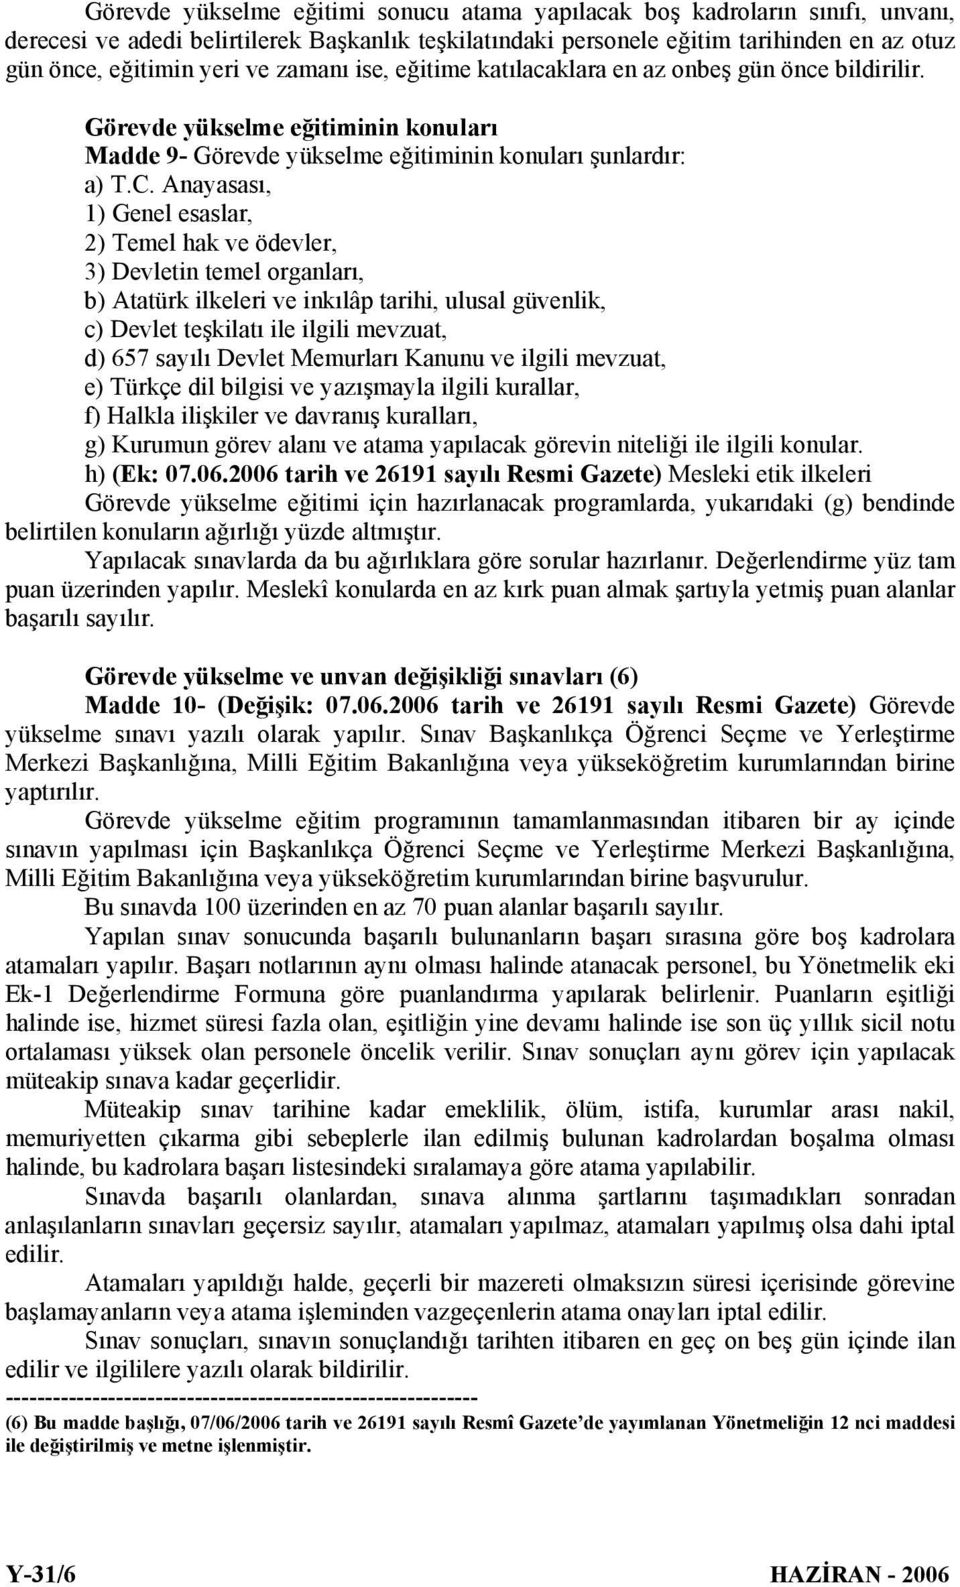 Anayasası, 1) Genel esaslar, 2) Temel hak ve ödevler, 3) Devletin temel organları, b) Atatürk ilkeleri ve inkılâp tarihi, ulusal güvenlik, c) Devlet teşkilatı ile ilgili mevzuat, d) 657 sayılı Devlet